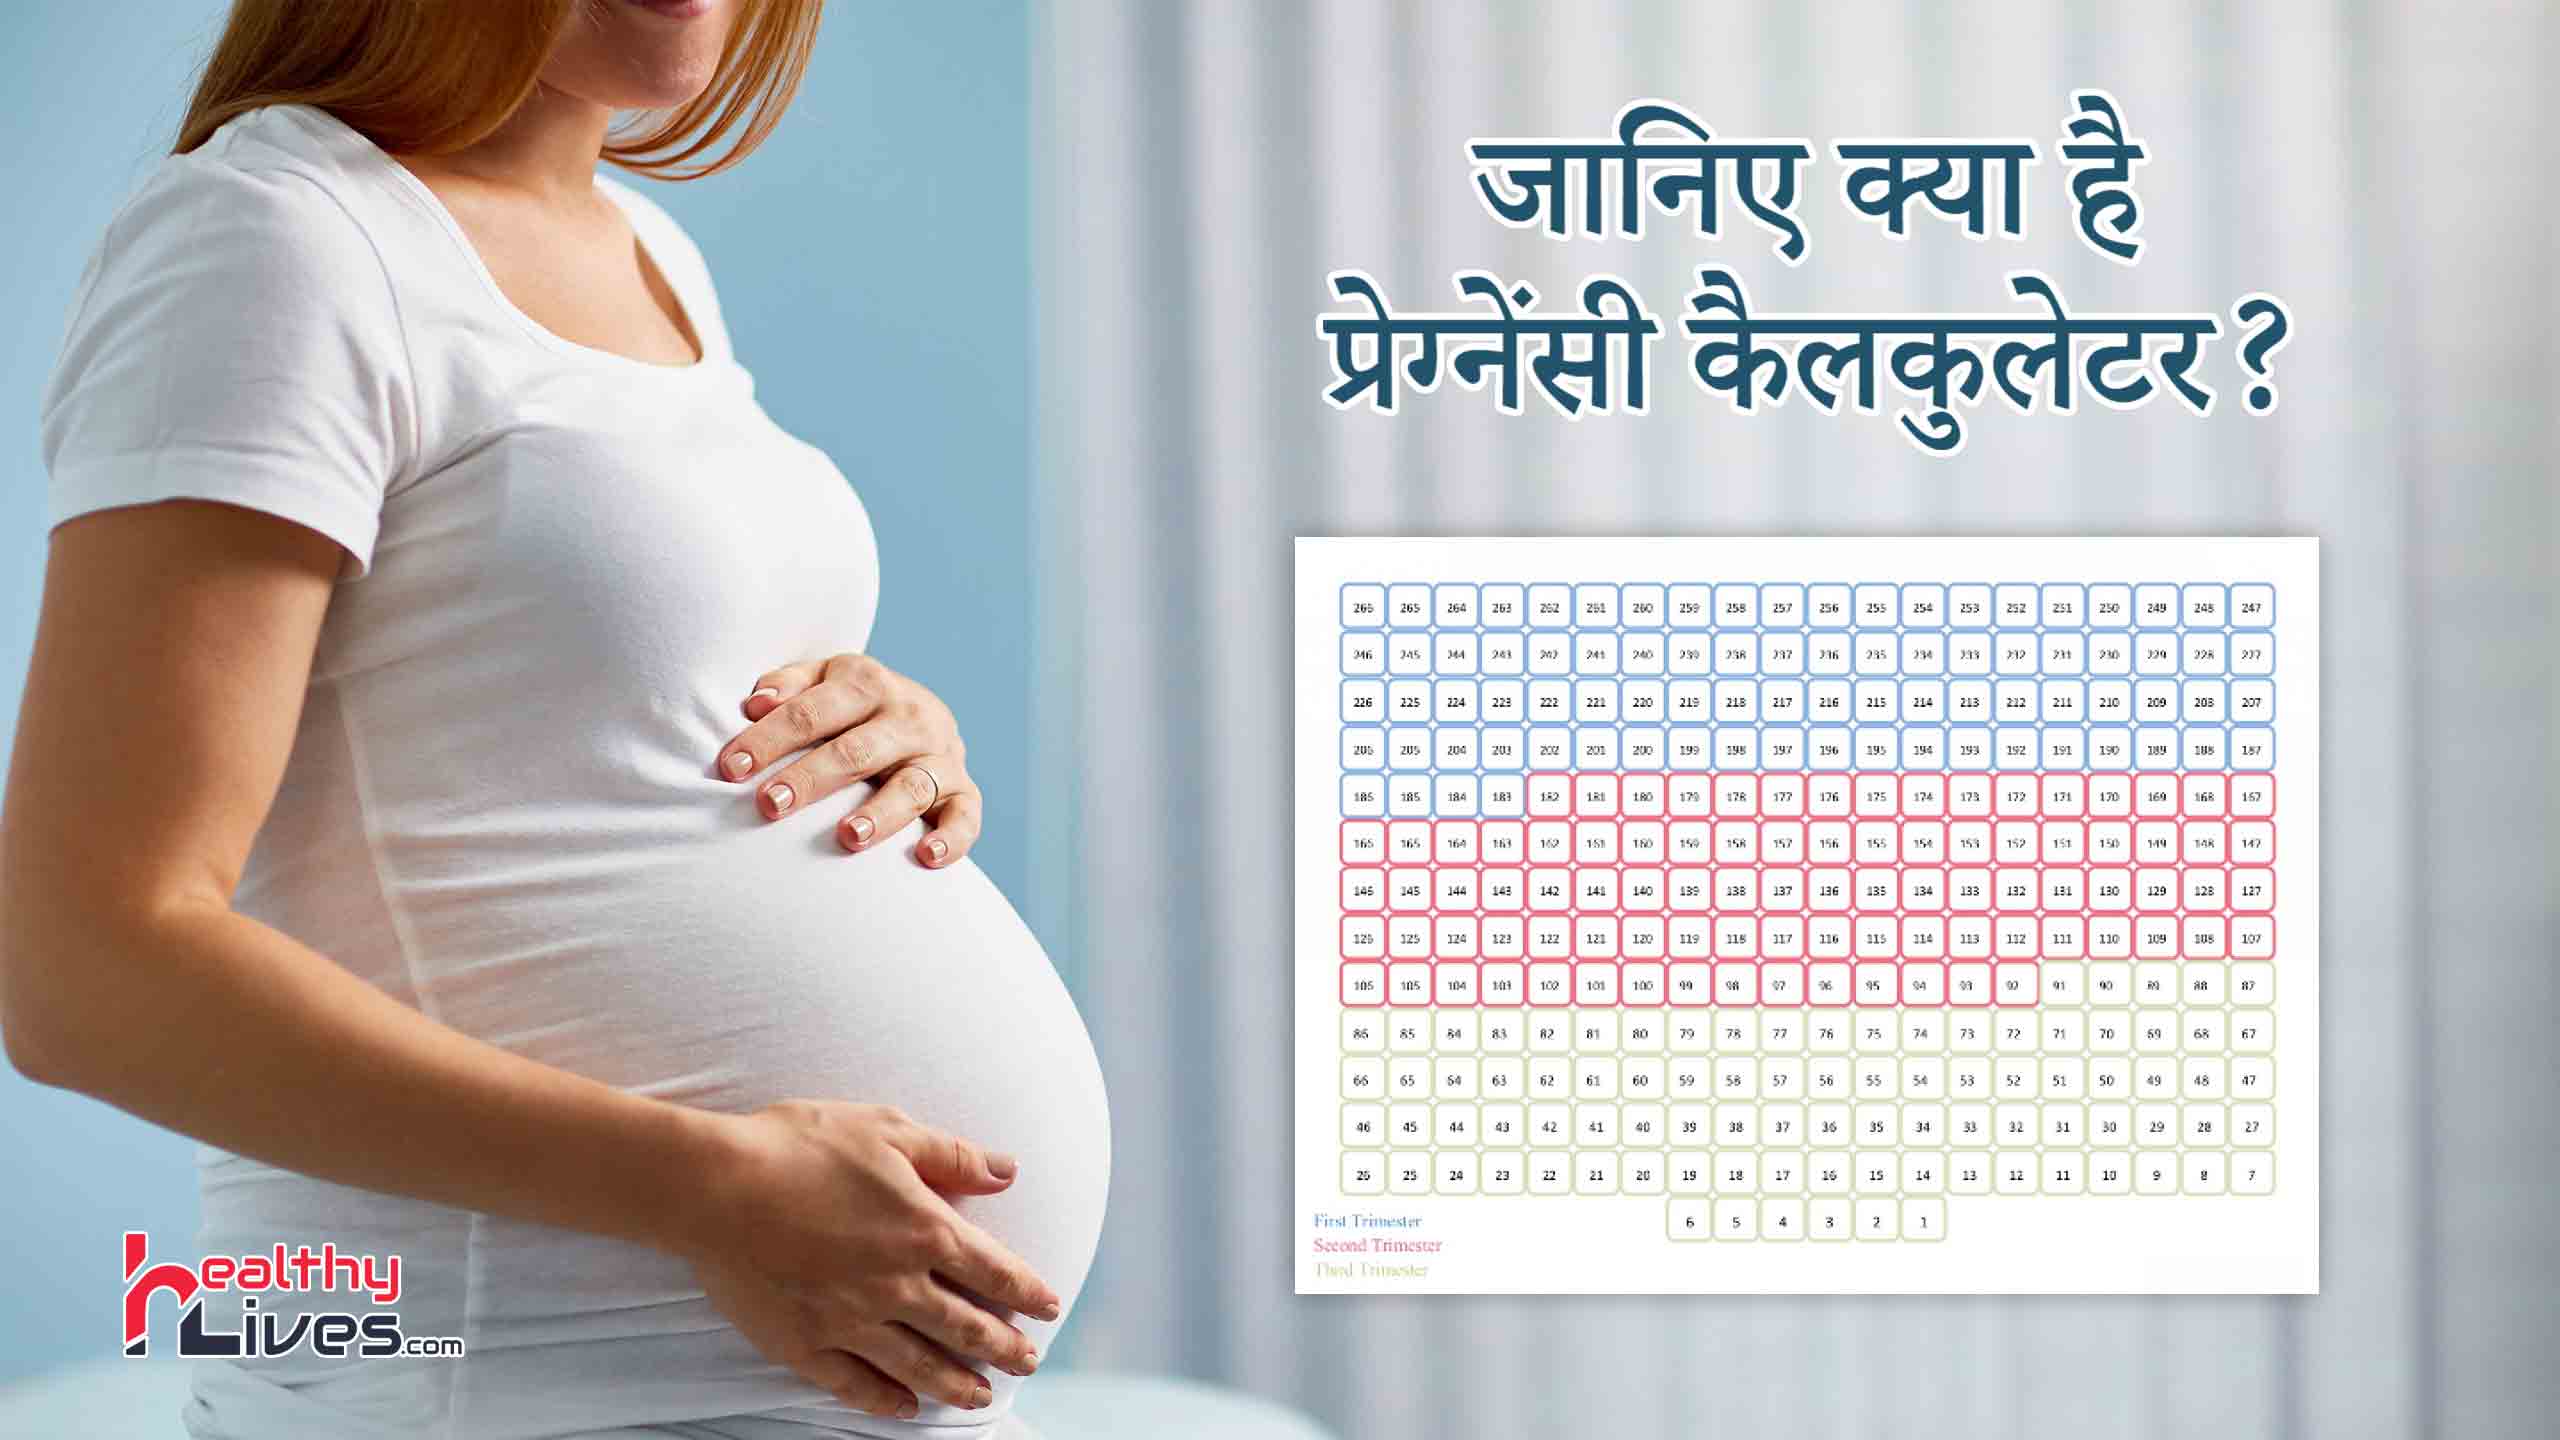 Pregnancy Calculator in Hindi: गर्भ में पल रहे बच्चे की जन्म तारीख कैलकुलेट करे